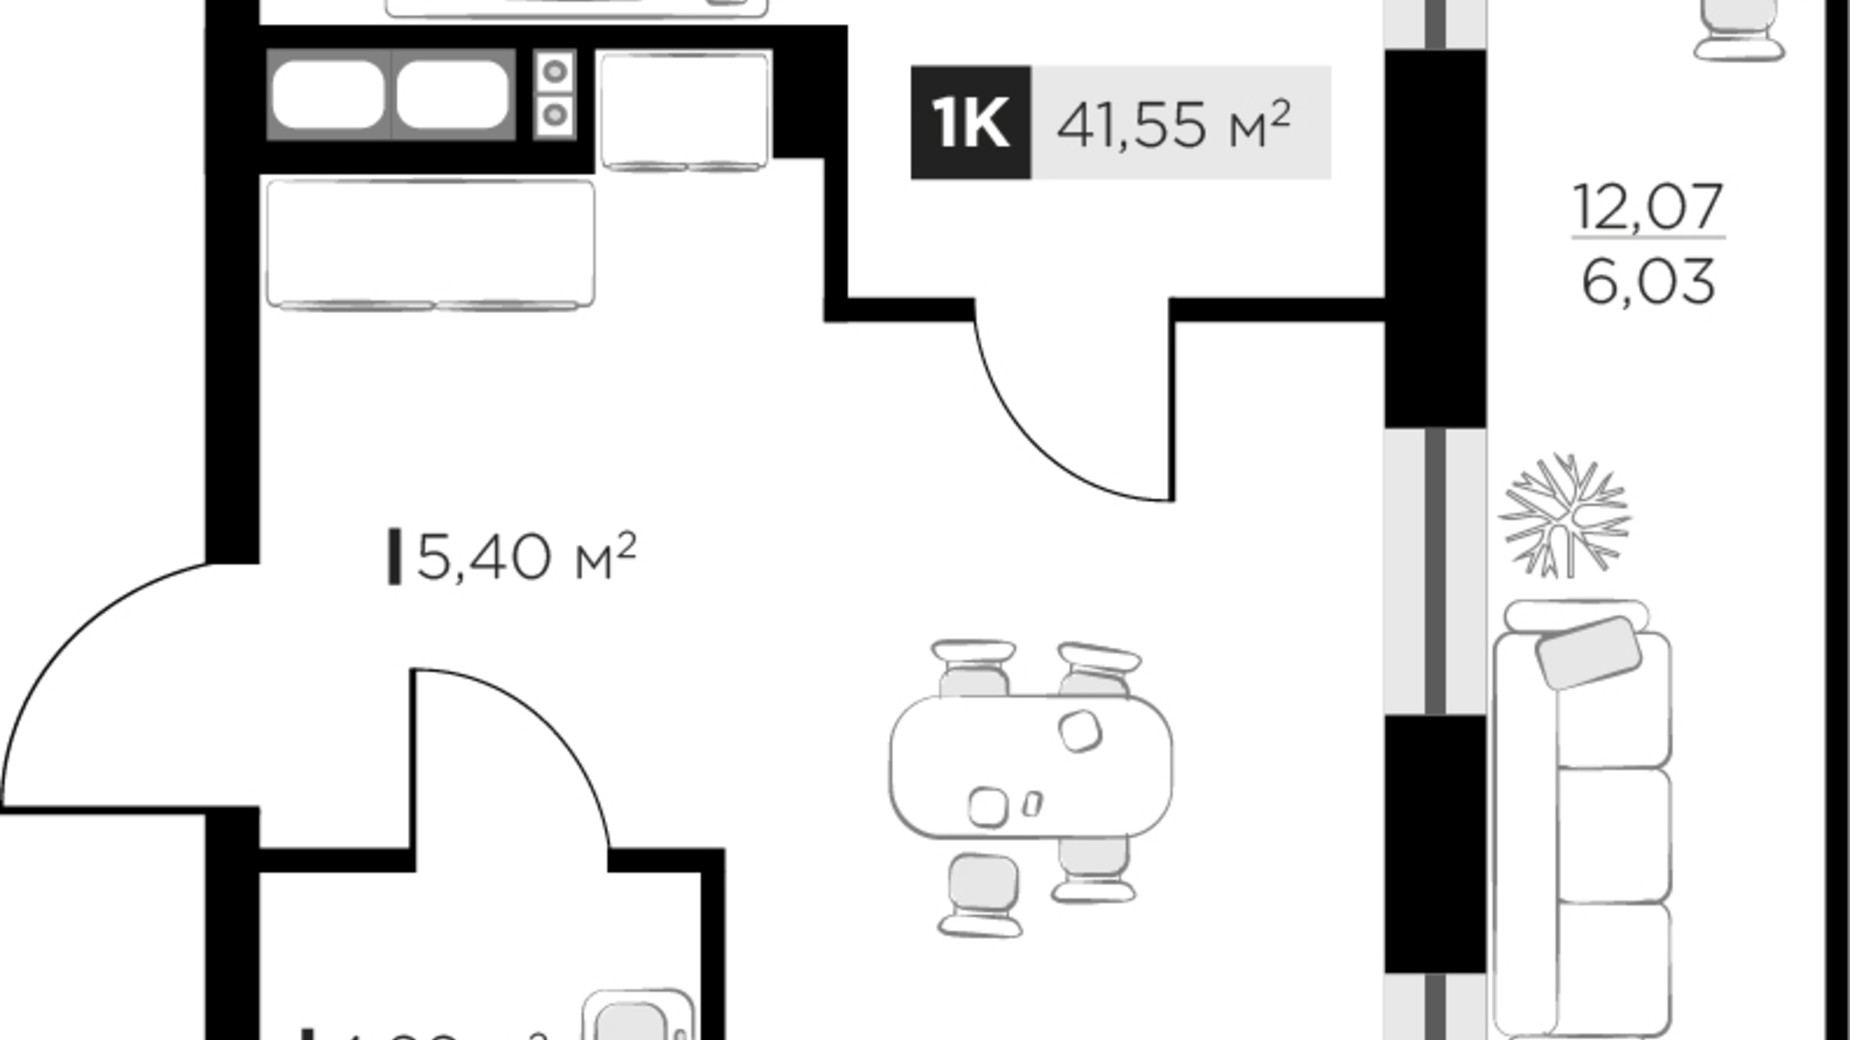 Планування 1-кімнатної квартири в ЖК SILENT PARK 41.55 м², фото 521149